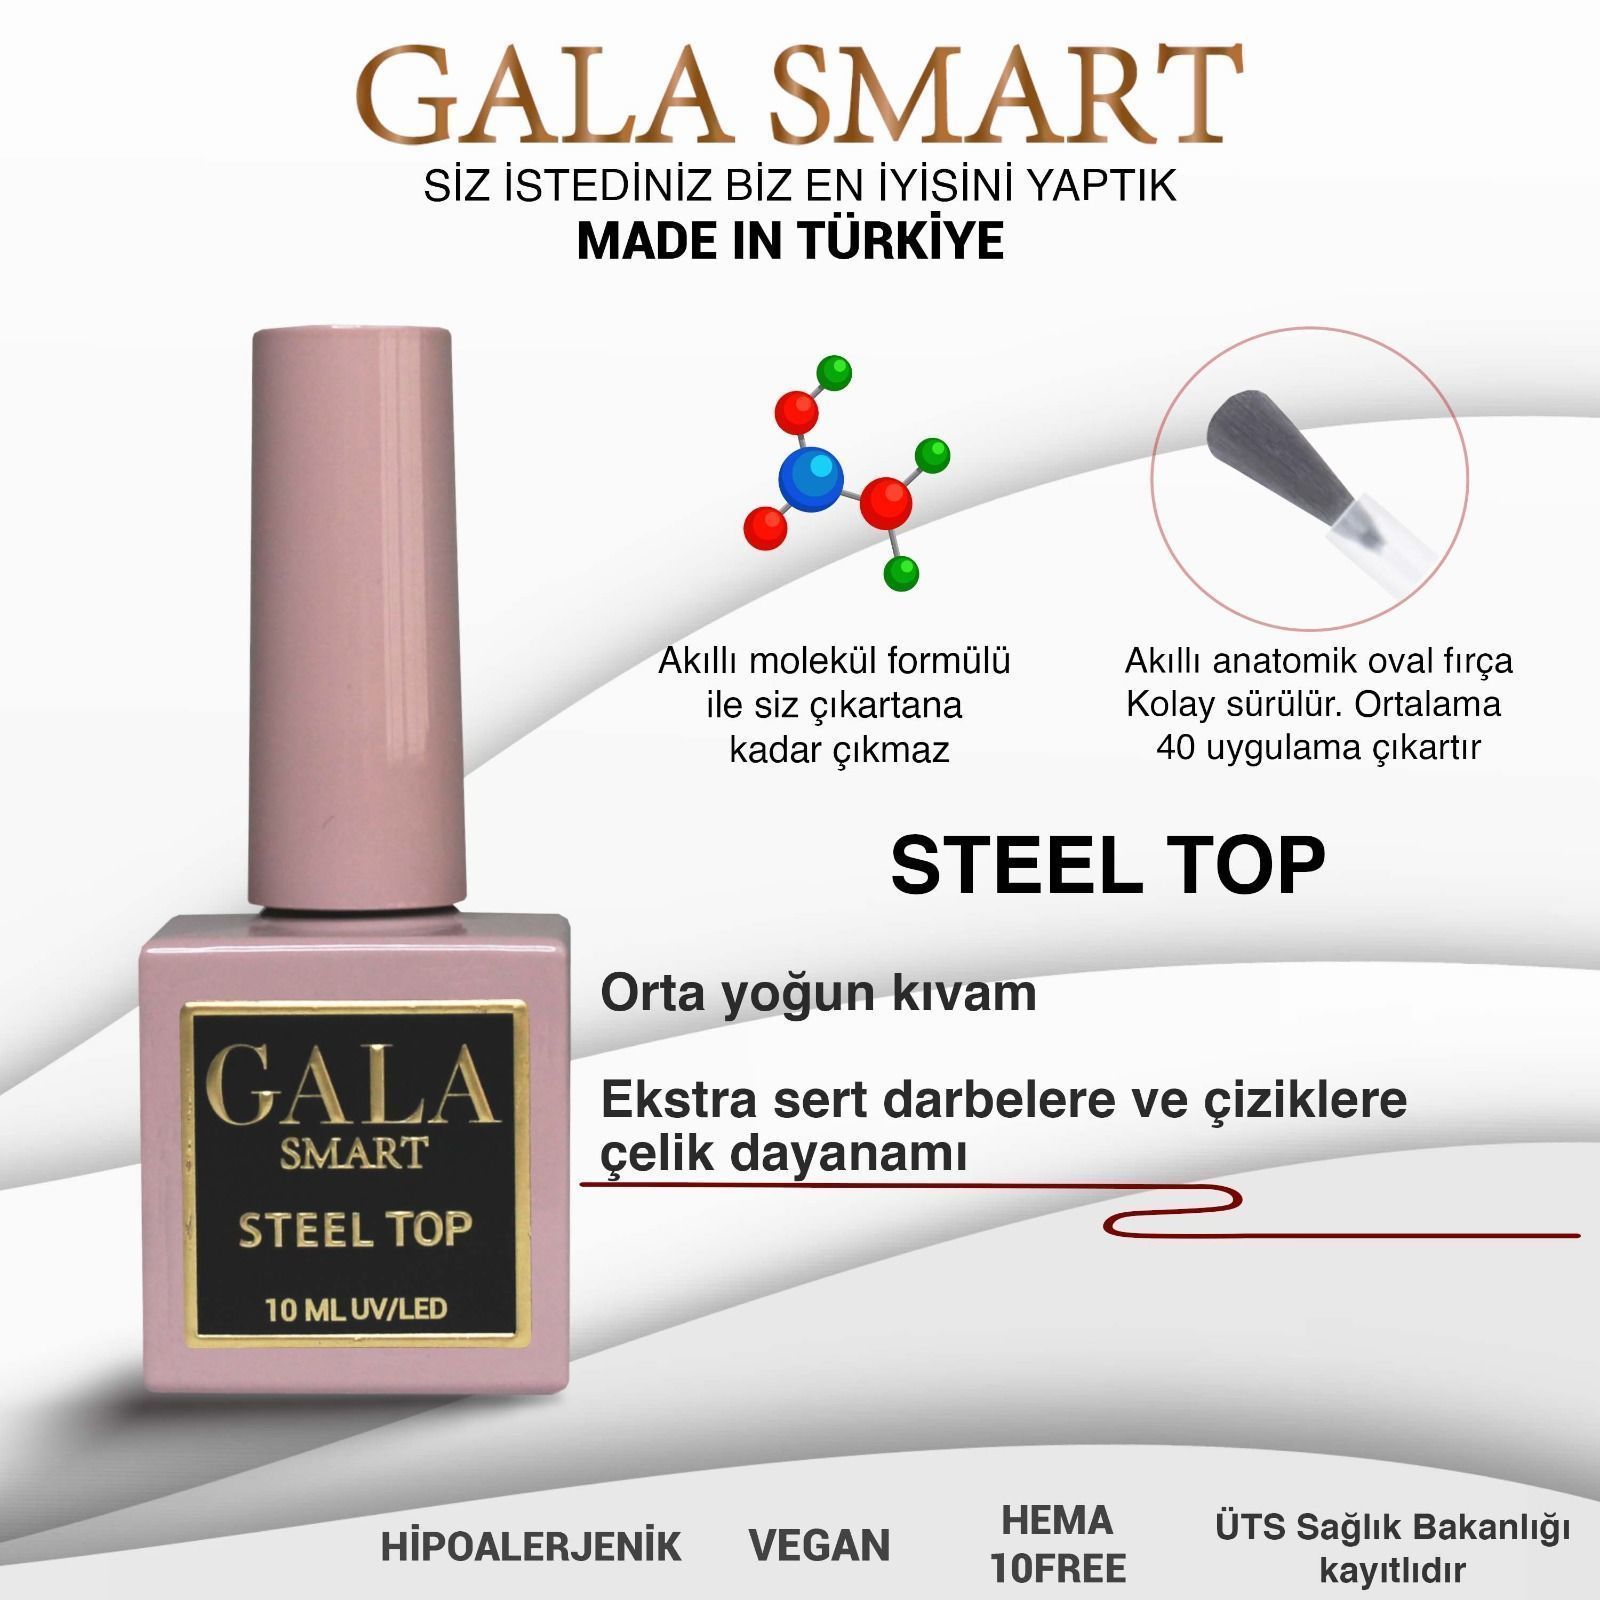 GALA SMART STEEL TOP 10 mle